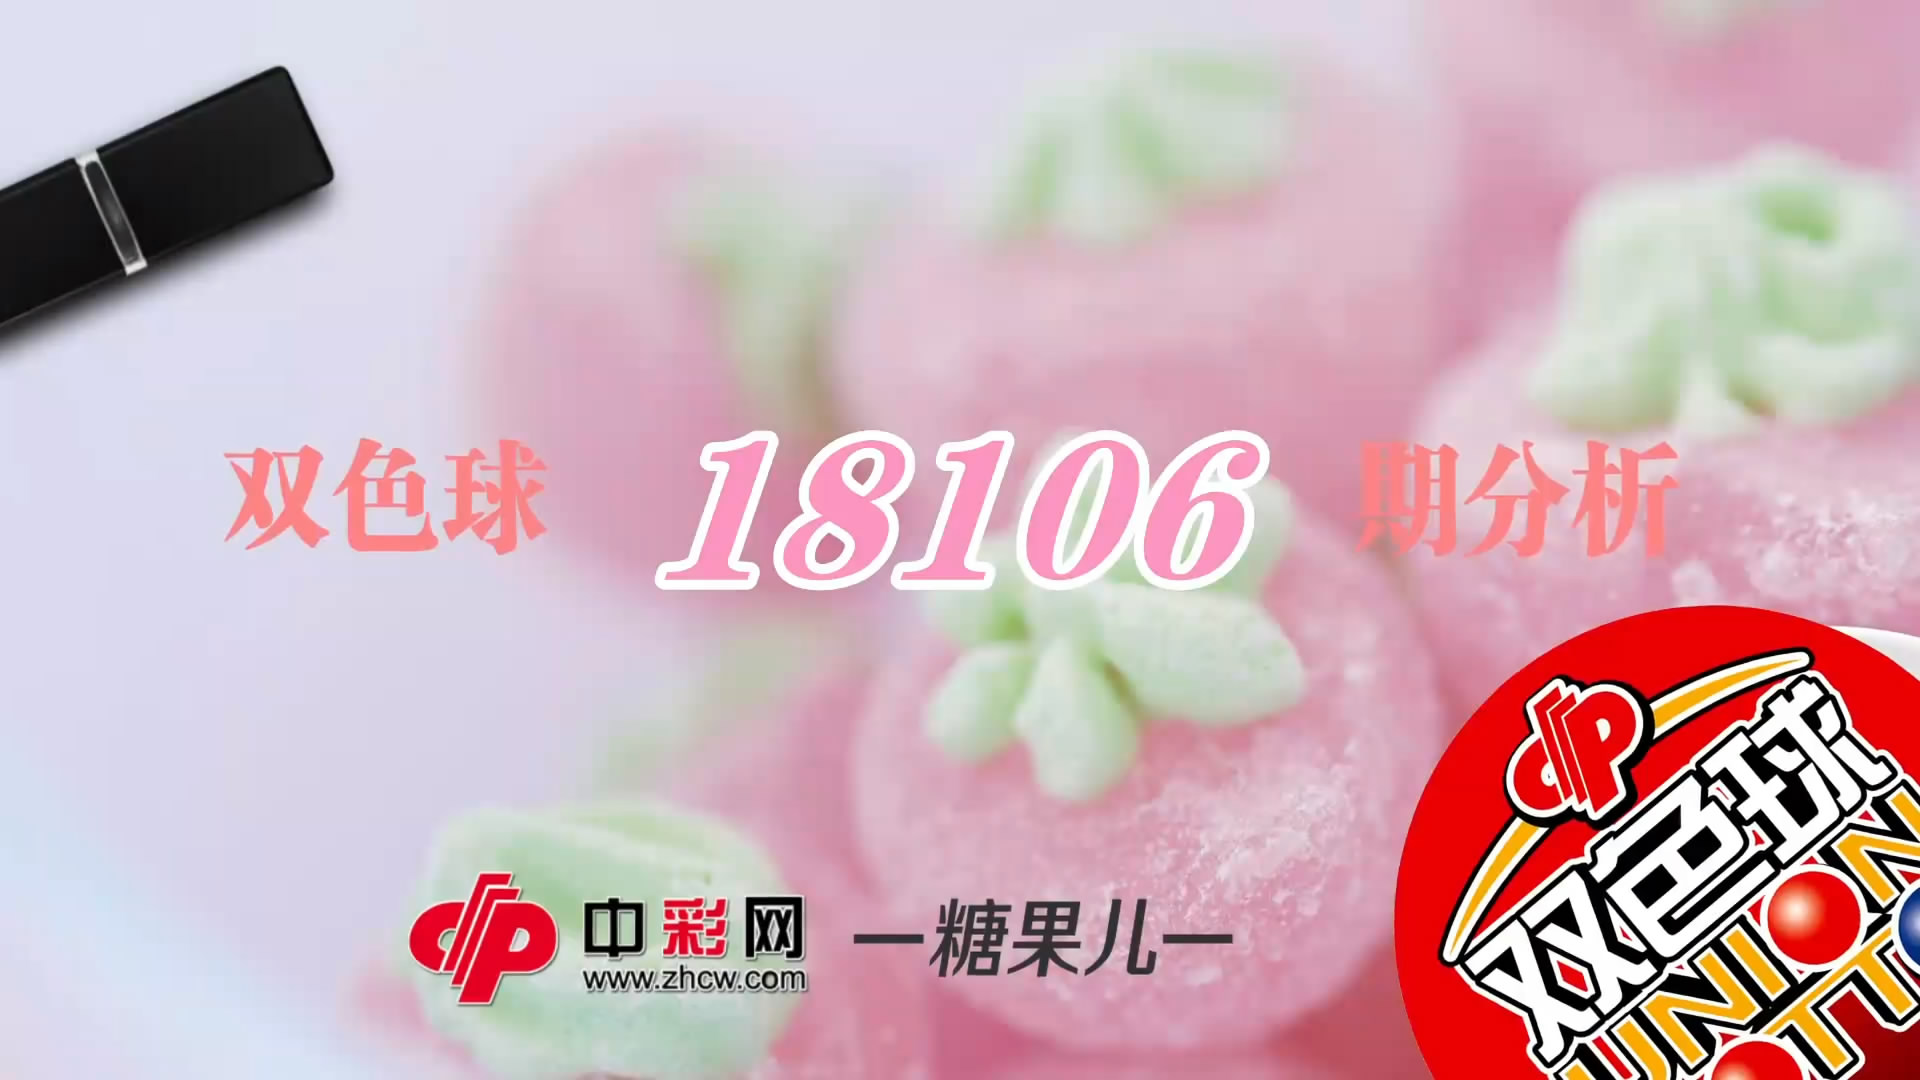 【中彩视频】糖果儿双色球第18106期